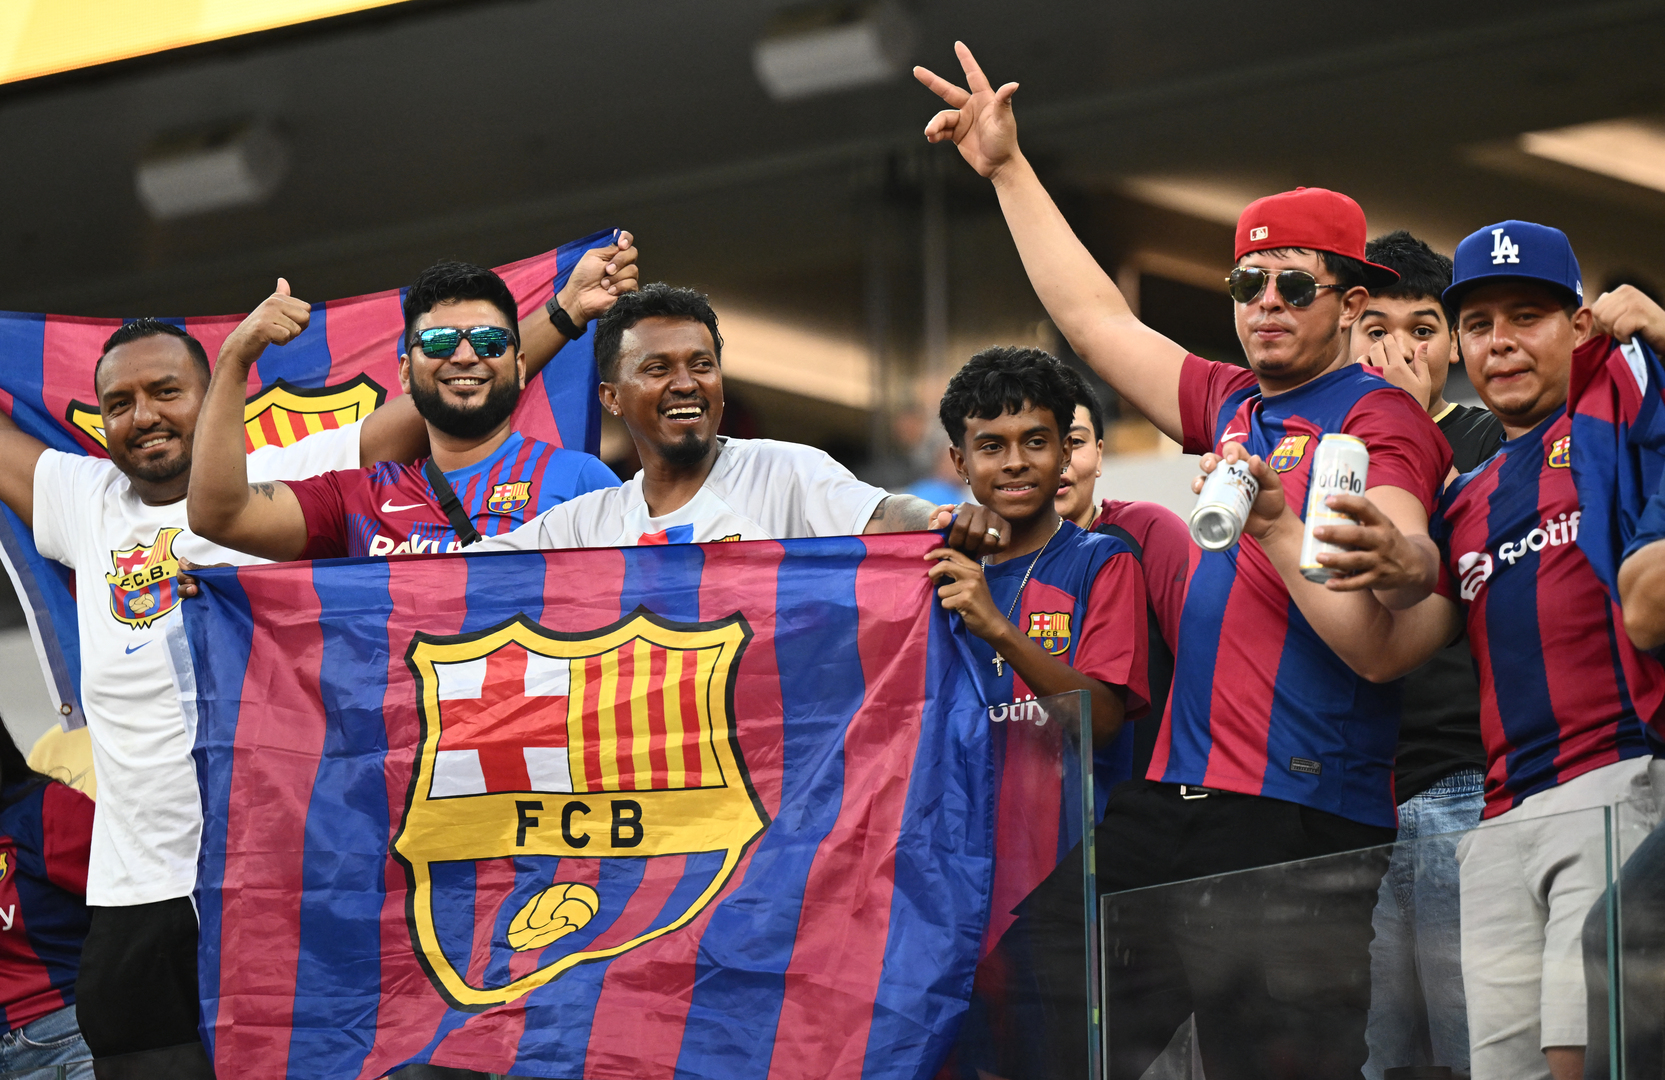 تحذيرات برشلونة لجماهيره قبل كأس السوبر في السعودية